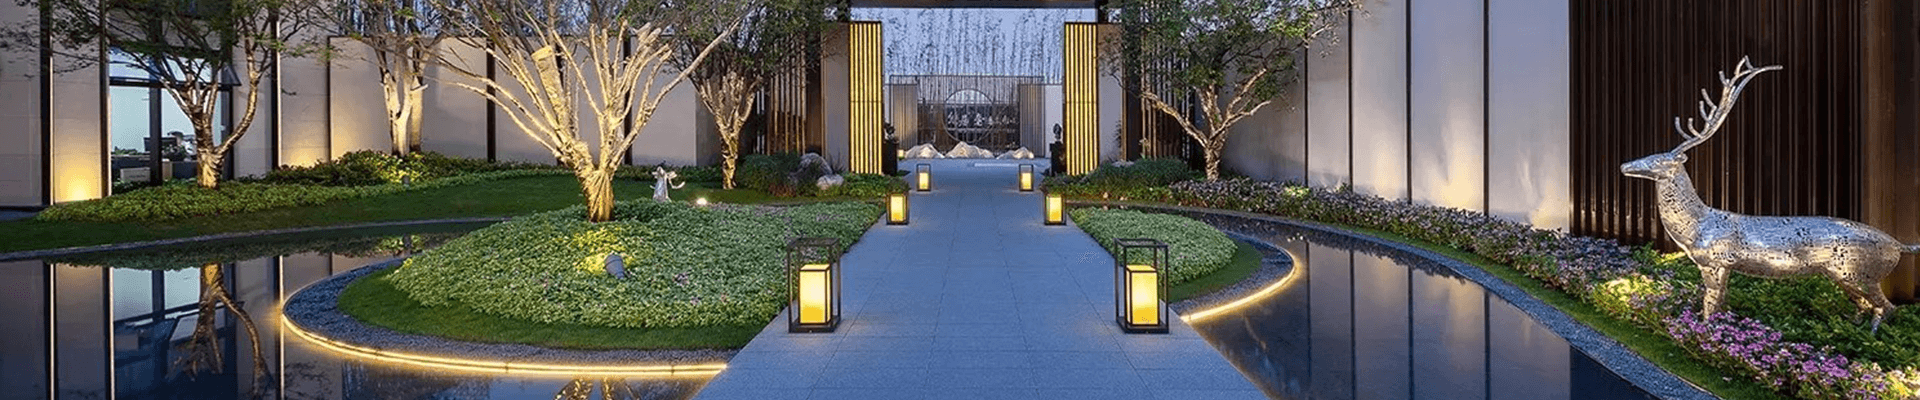 合作伙伴-LED景观灯柱,室外景观路灯厂家-武汉时代经典